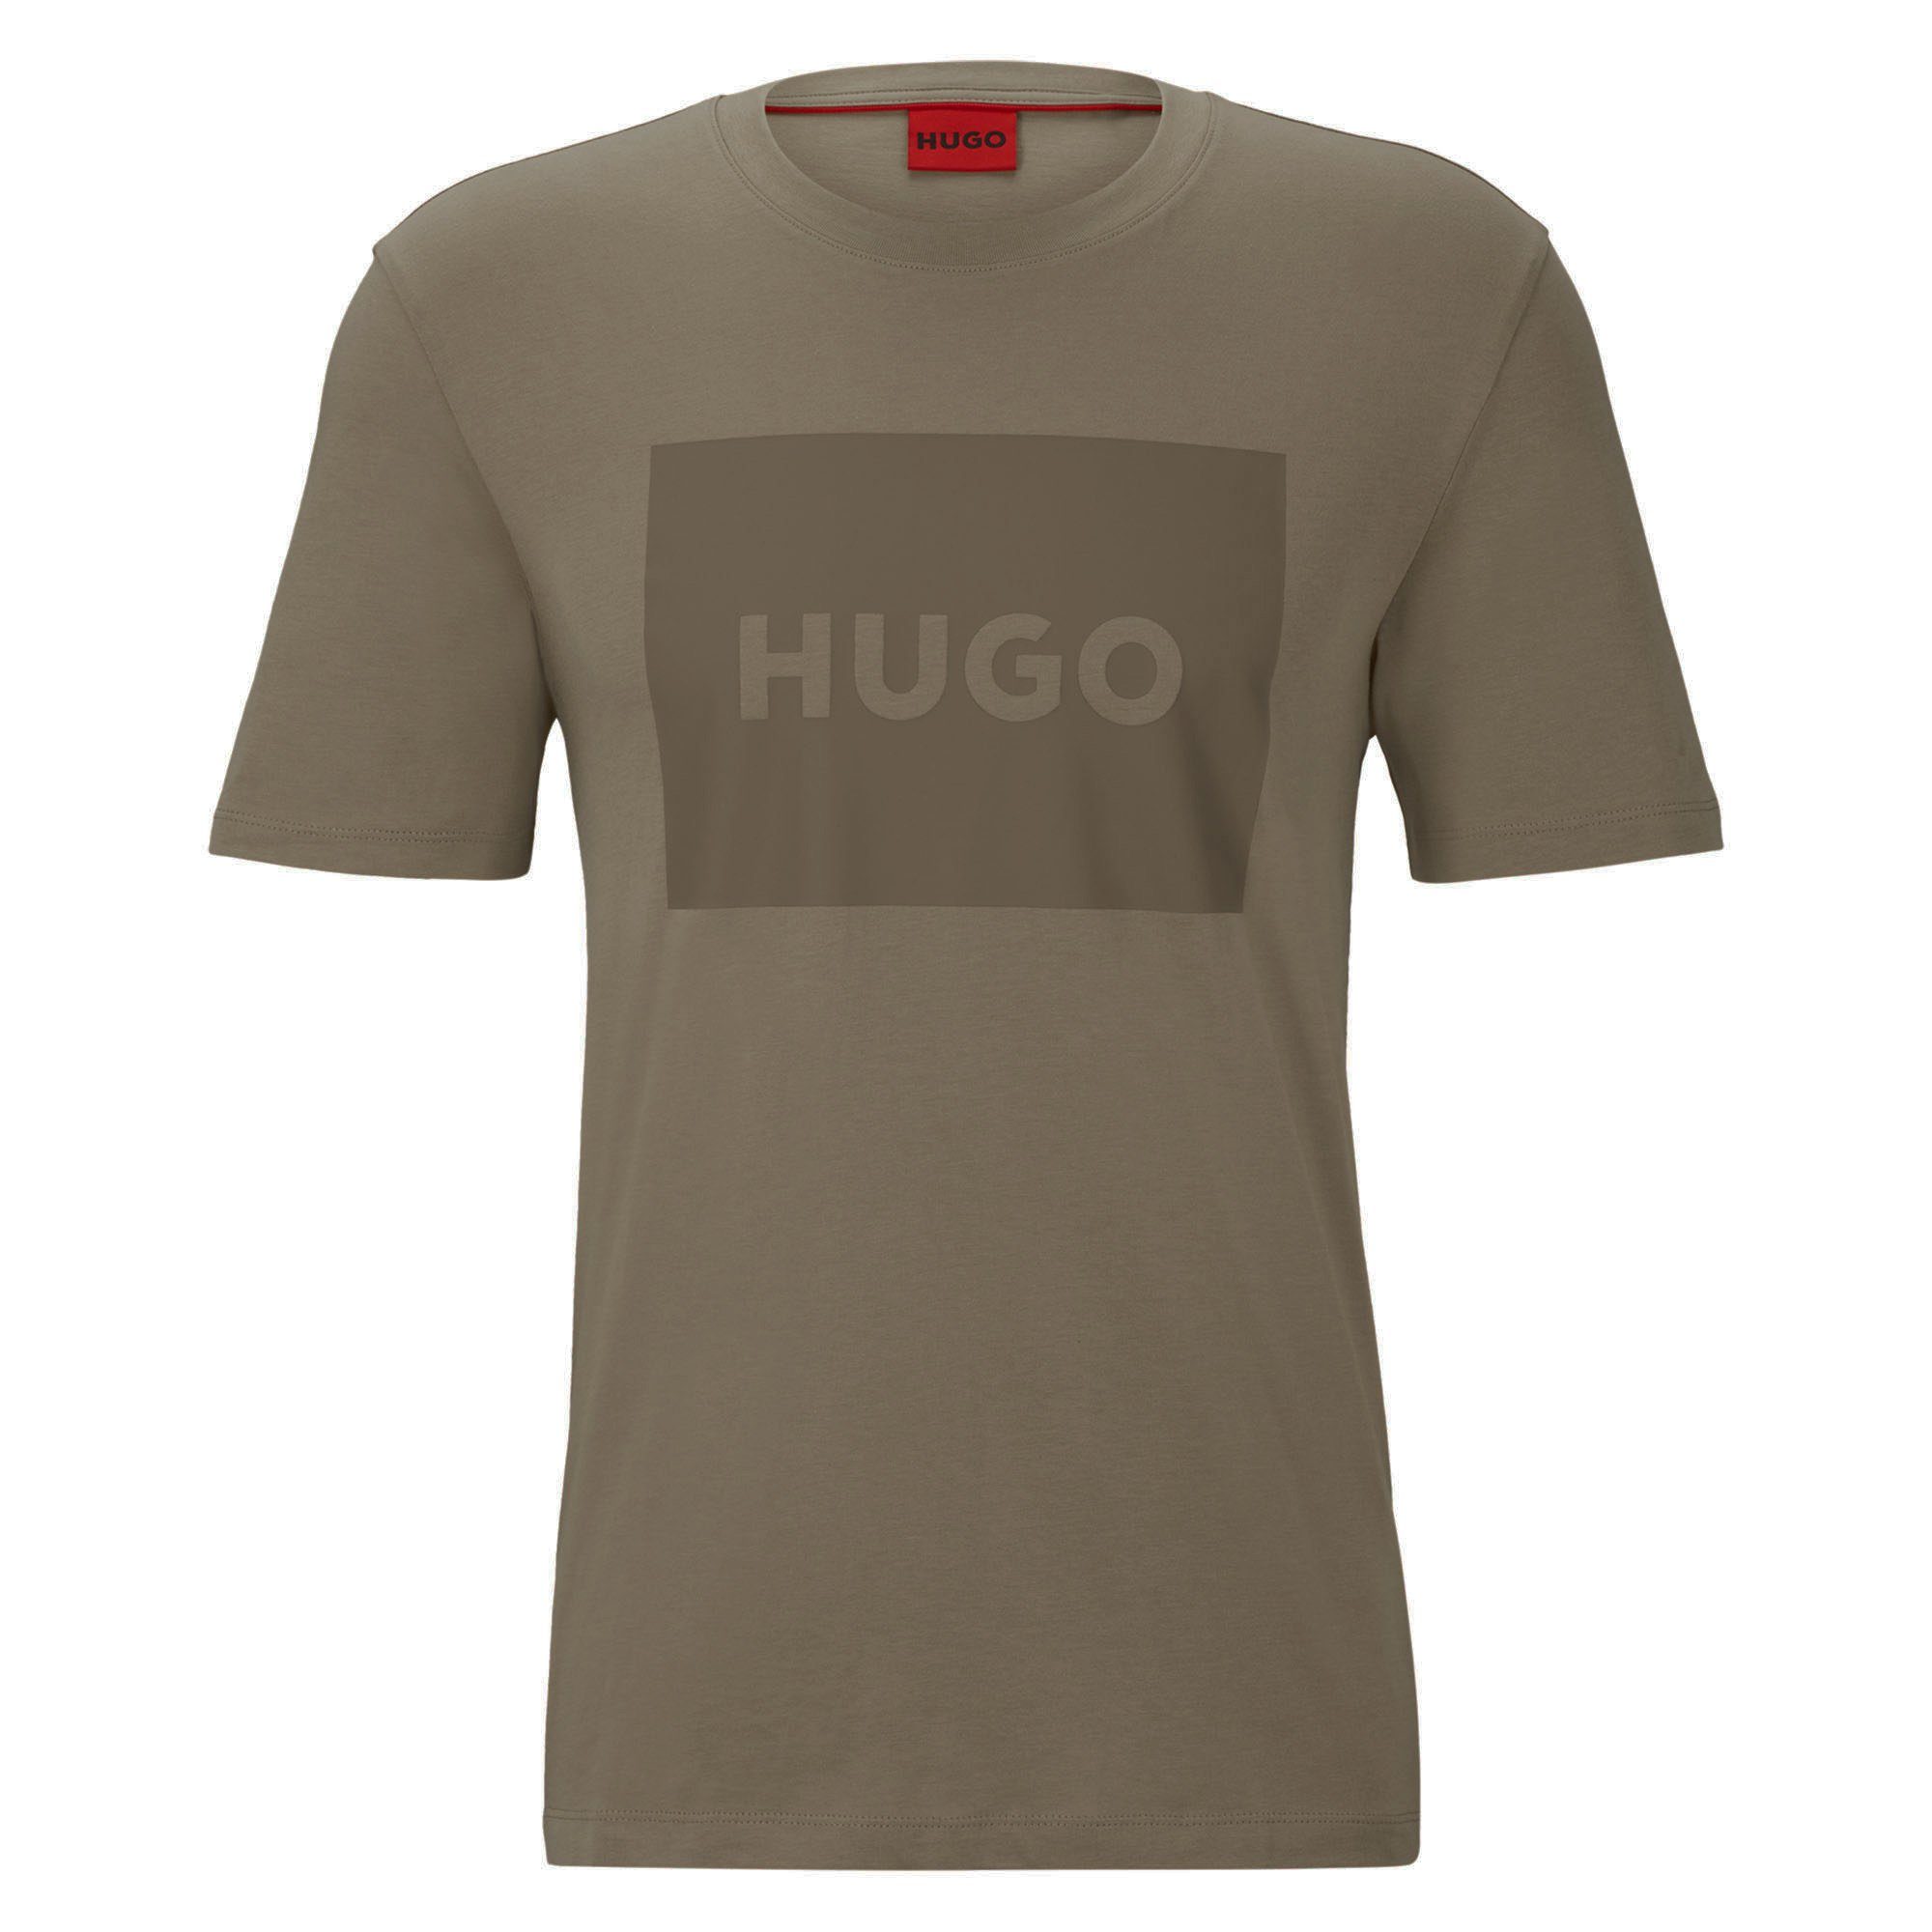 HUGO T-Shirt Herren T-Shirt Braun Rundhals, Dulive222, Kurzarm 